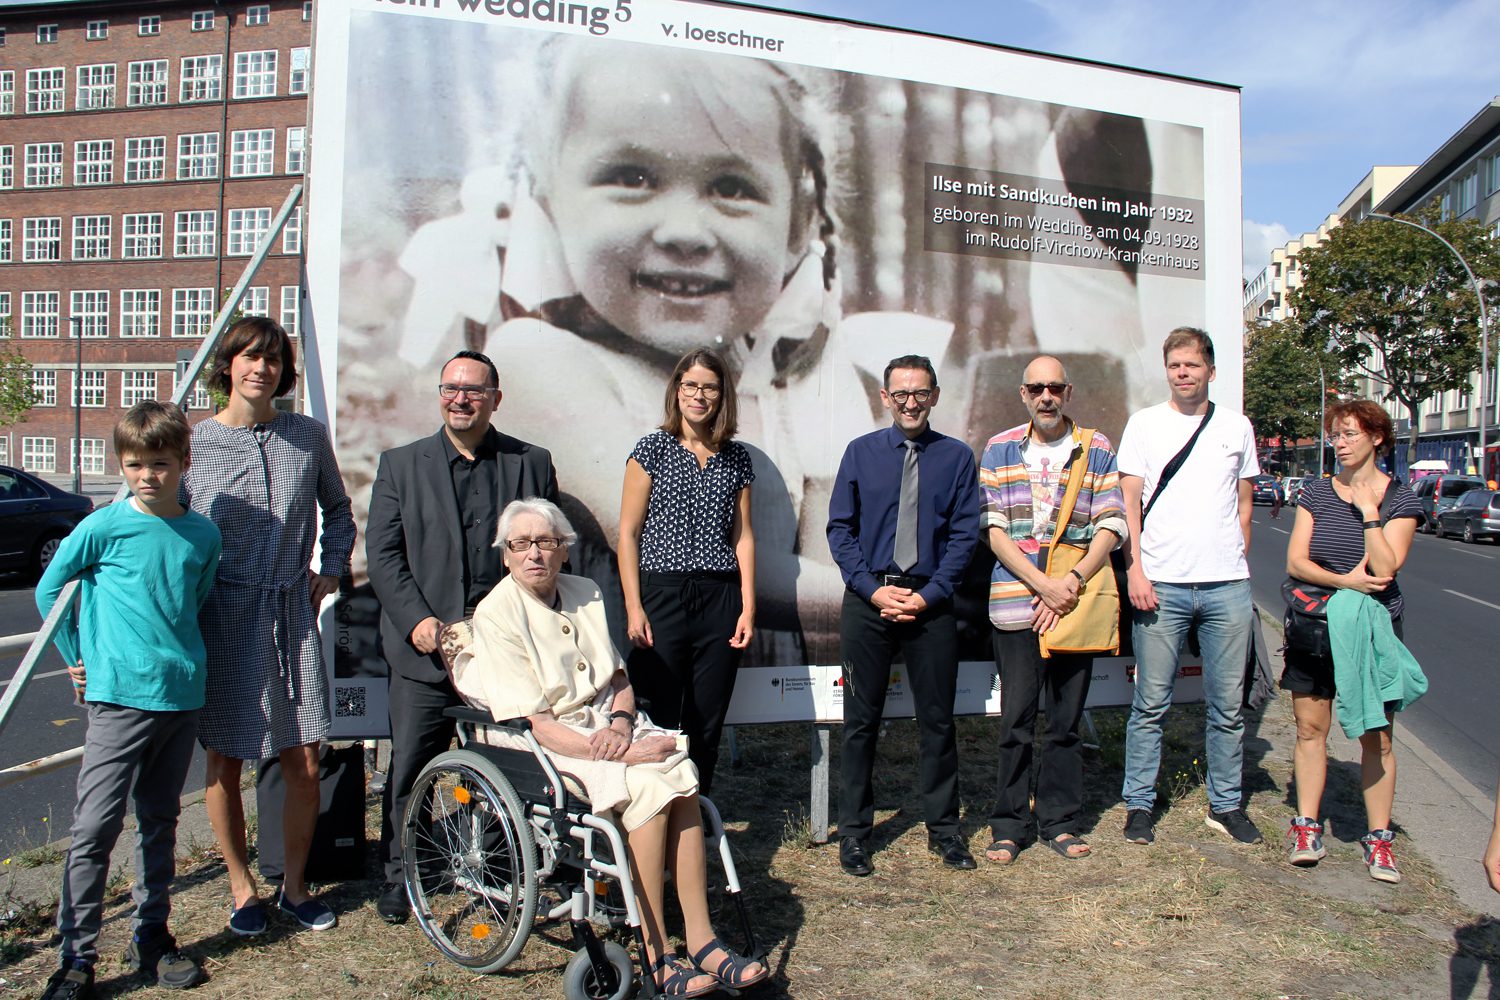 Bezirksbürgermeister Stephan von Dassel (mit Kravatte) mit den Menschen, deren Arbeiten für die Ausstellung "Mein Wedding 5" auf der Müllerstraße ausgewählt wurden. Foto: D. Hensel